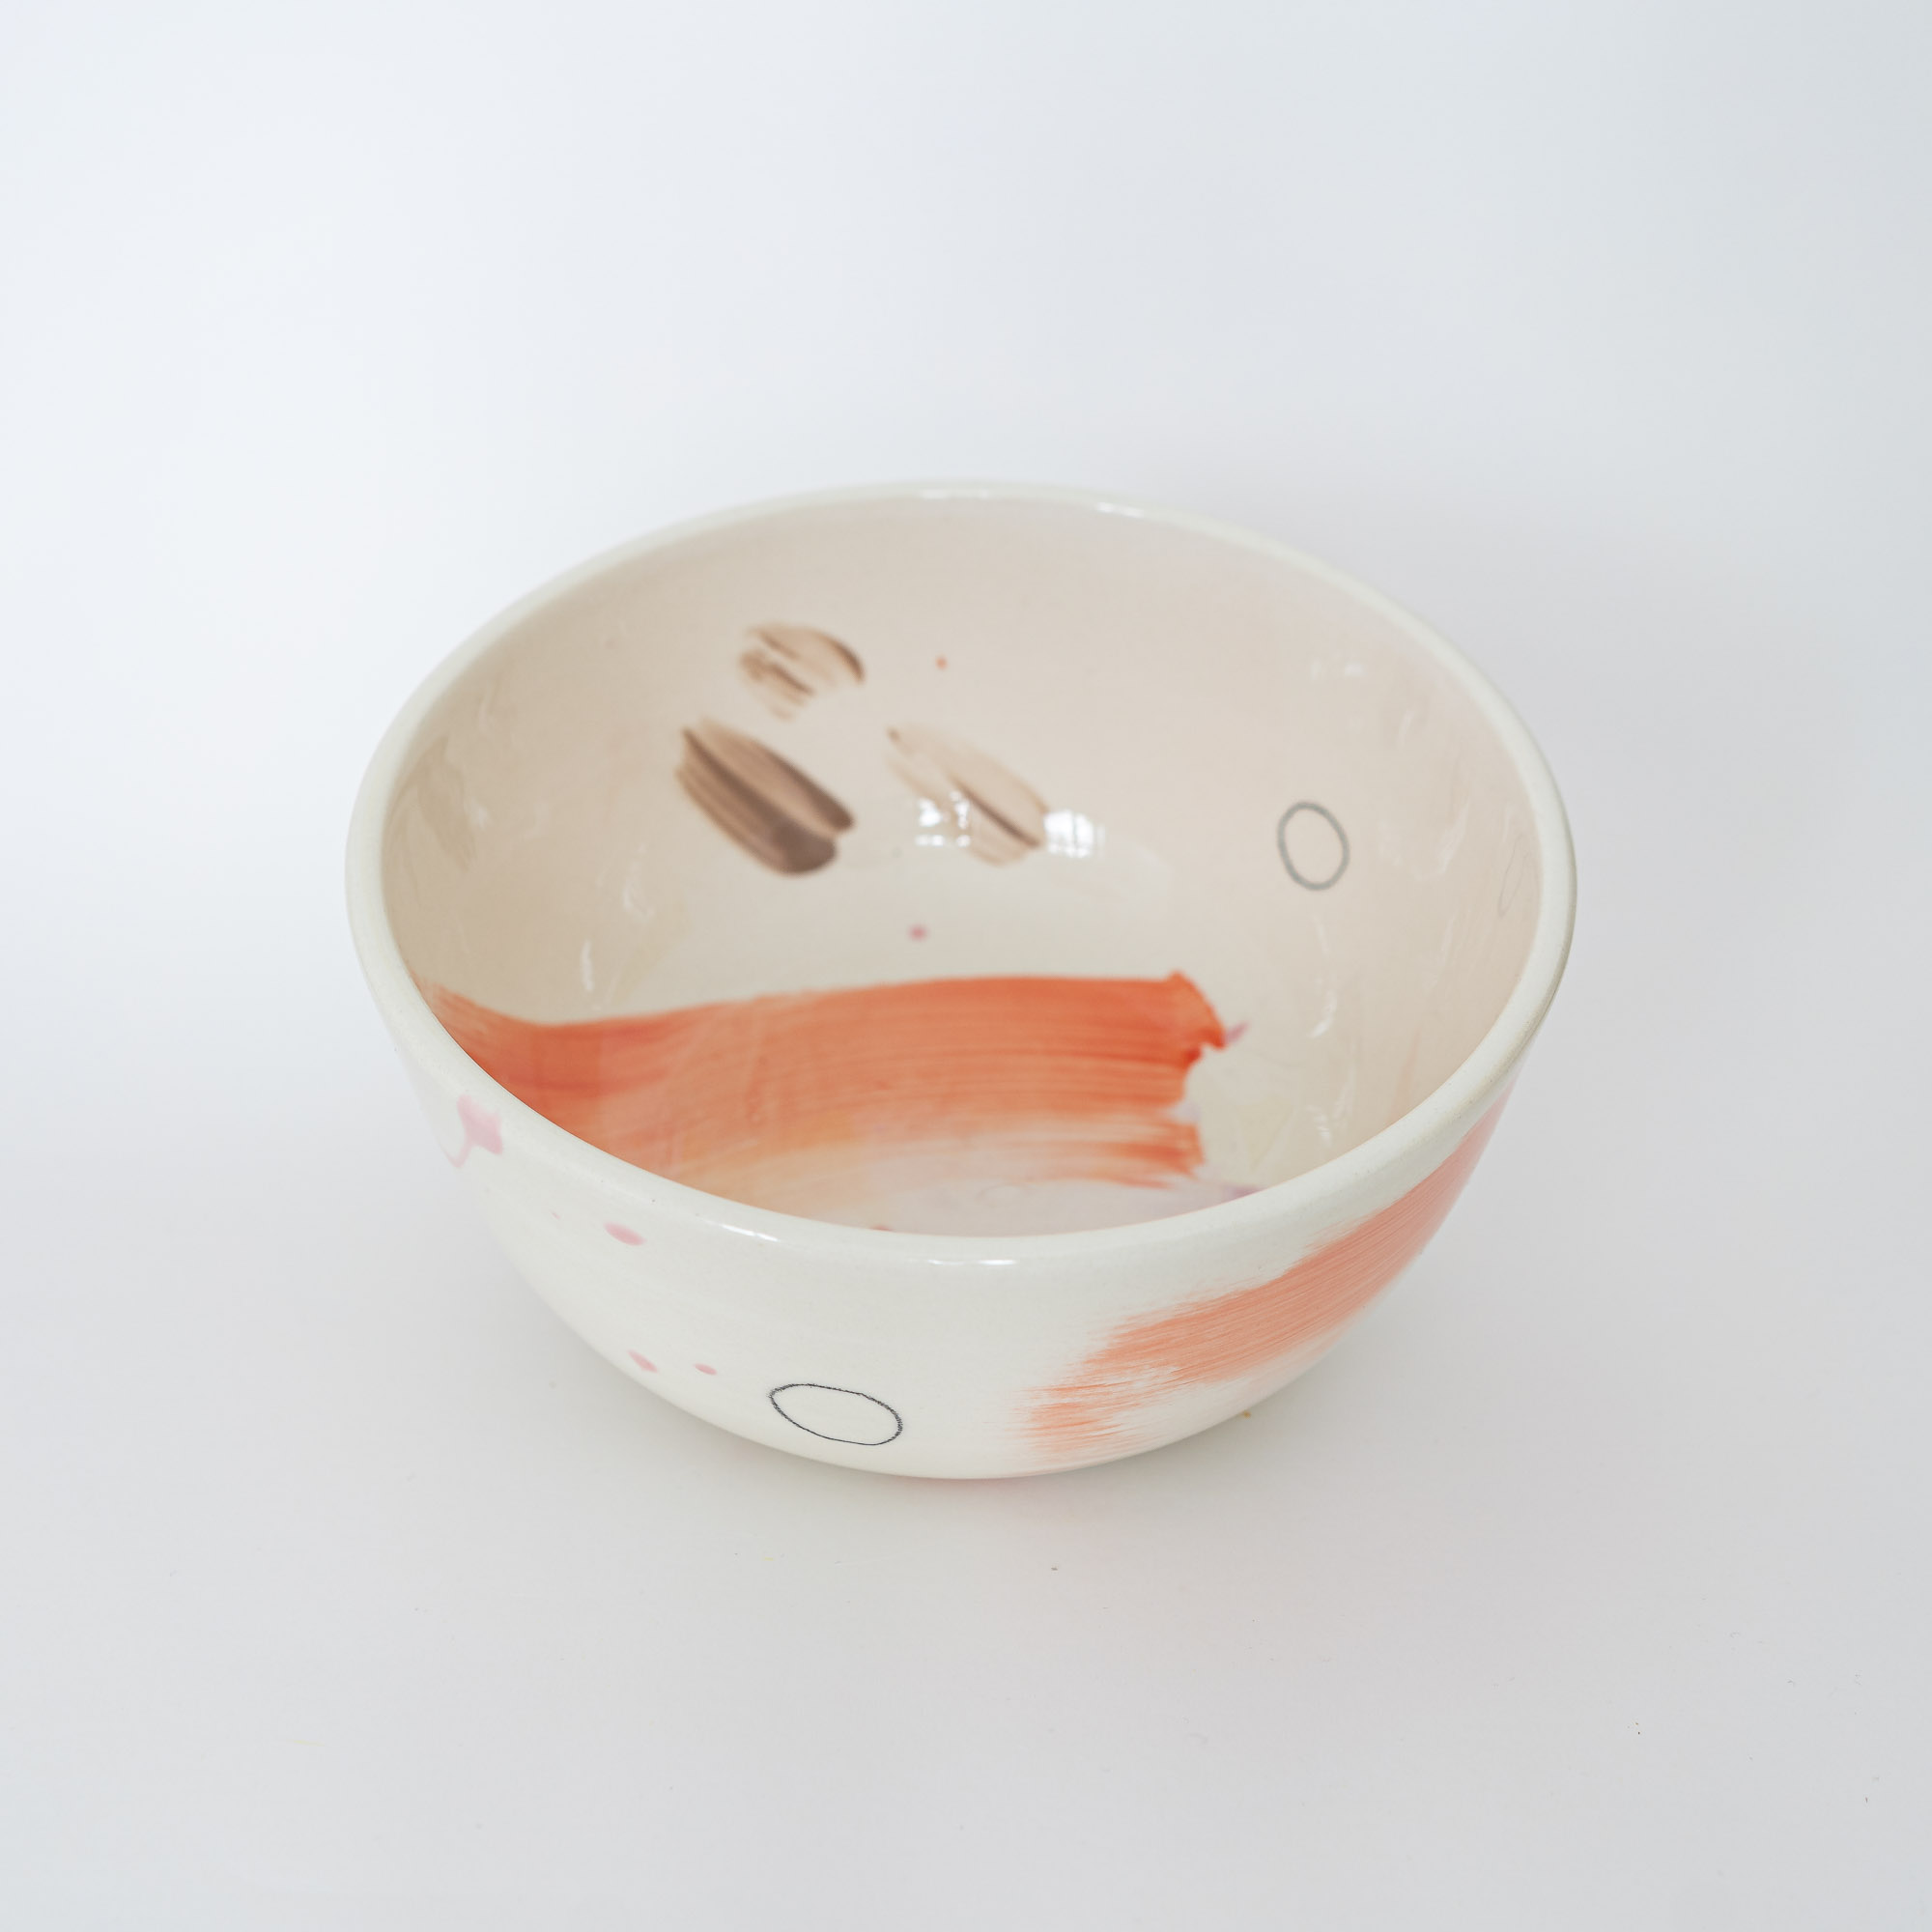 nicenicenice keramik00031